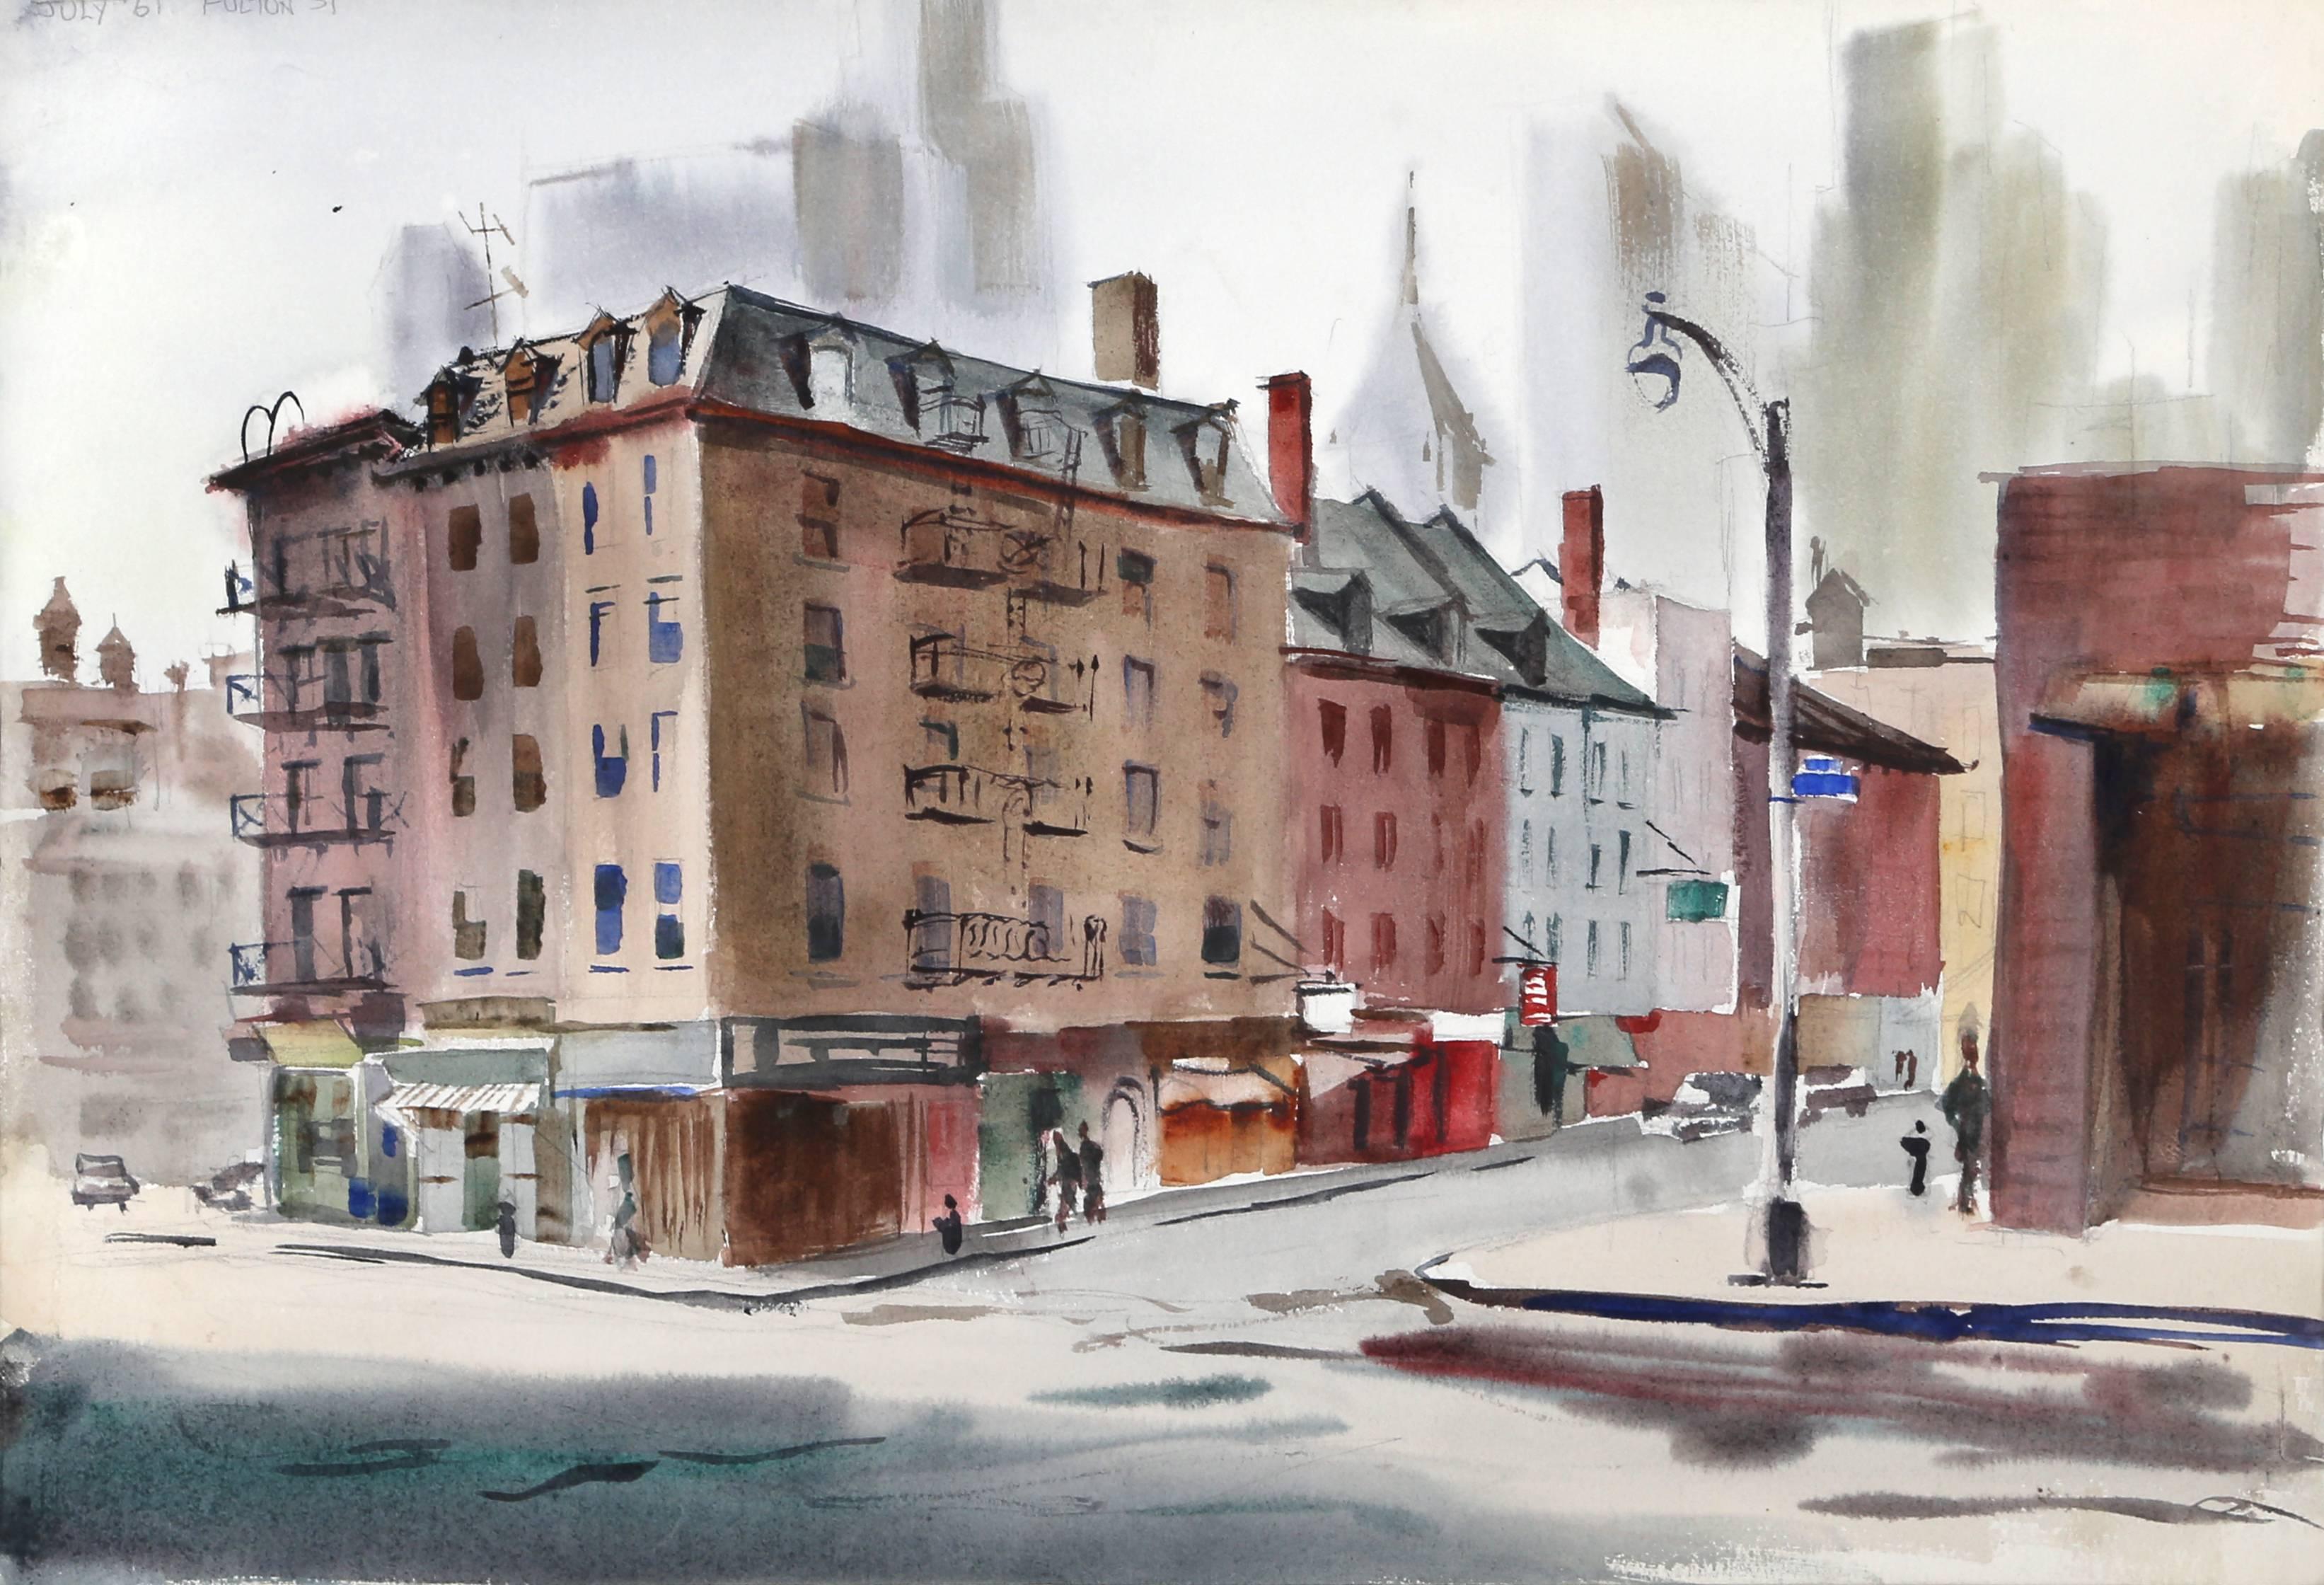 Künstlerin: Eve Nethercott, Amerikanerin (1925 - 2015)
Titel: Fulton Street (P5.31)
Jahr: 1961
Medium: Aquarell auf Papier
Größe: 15 x 22 Zoll (38,1 x 55,88 cm)